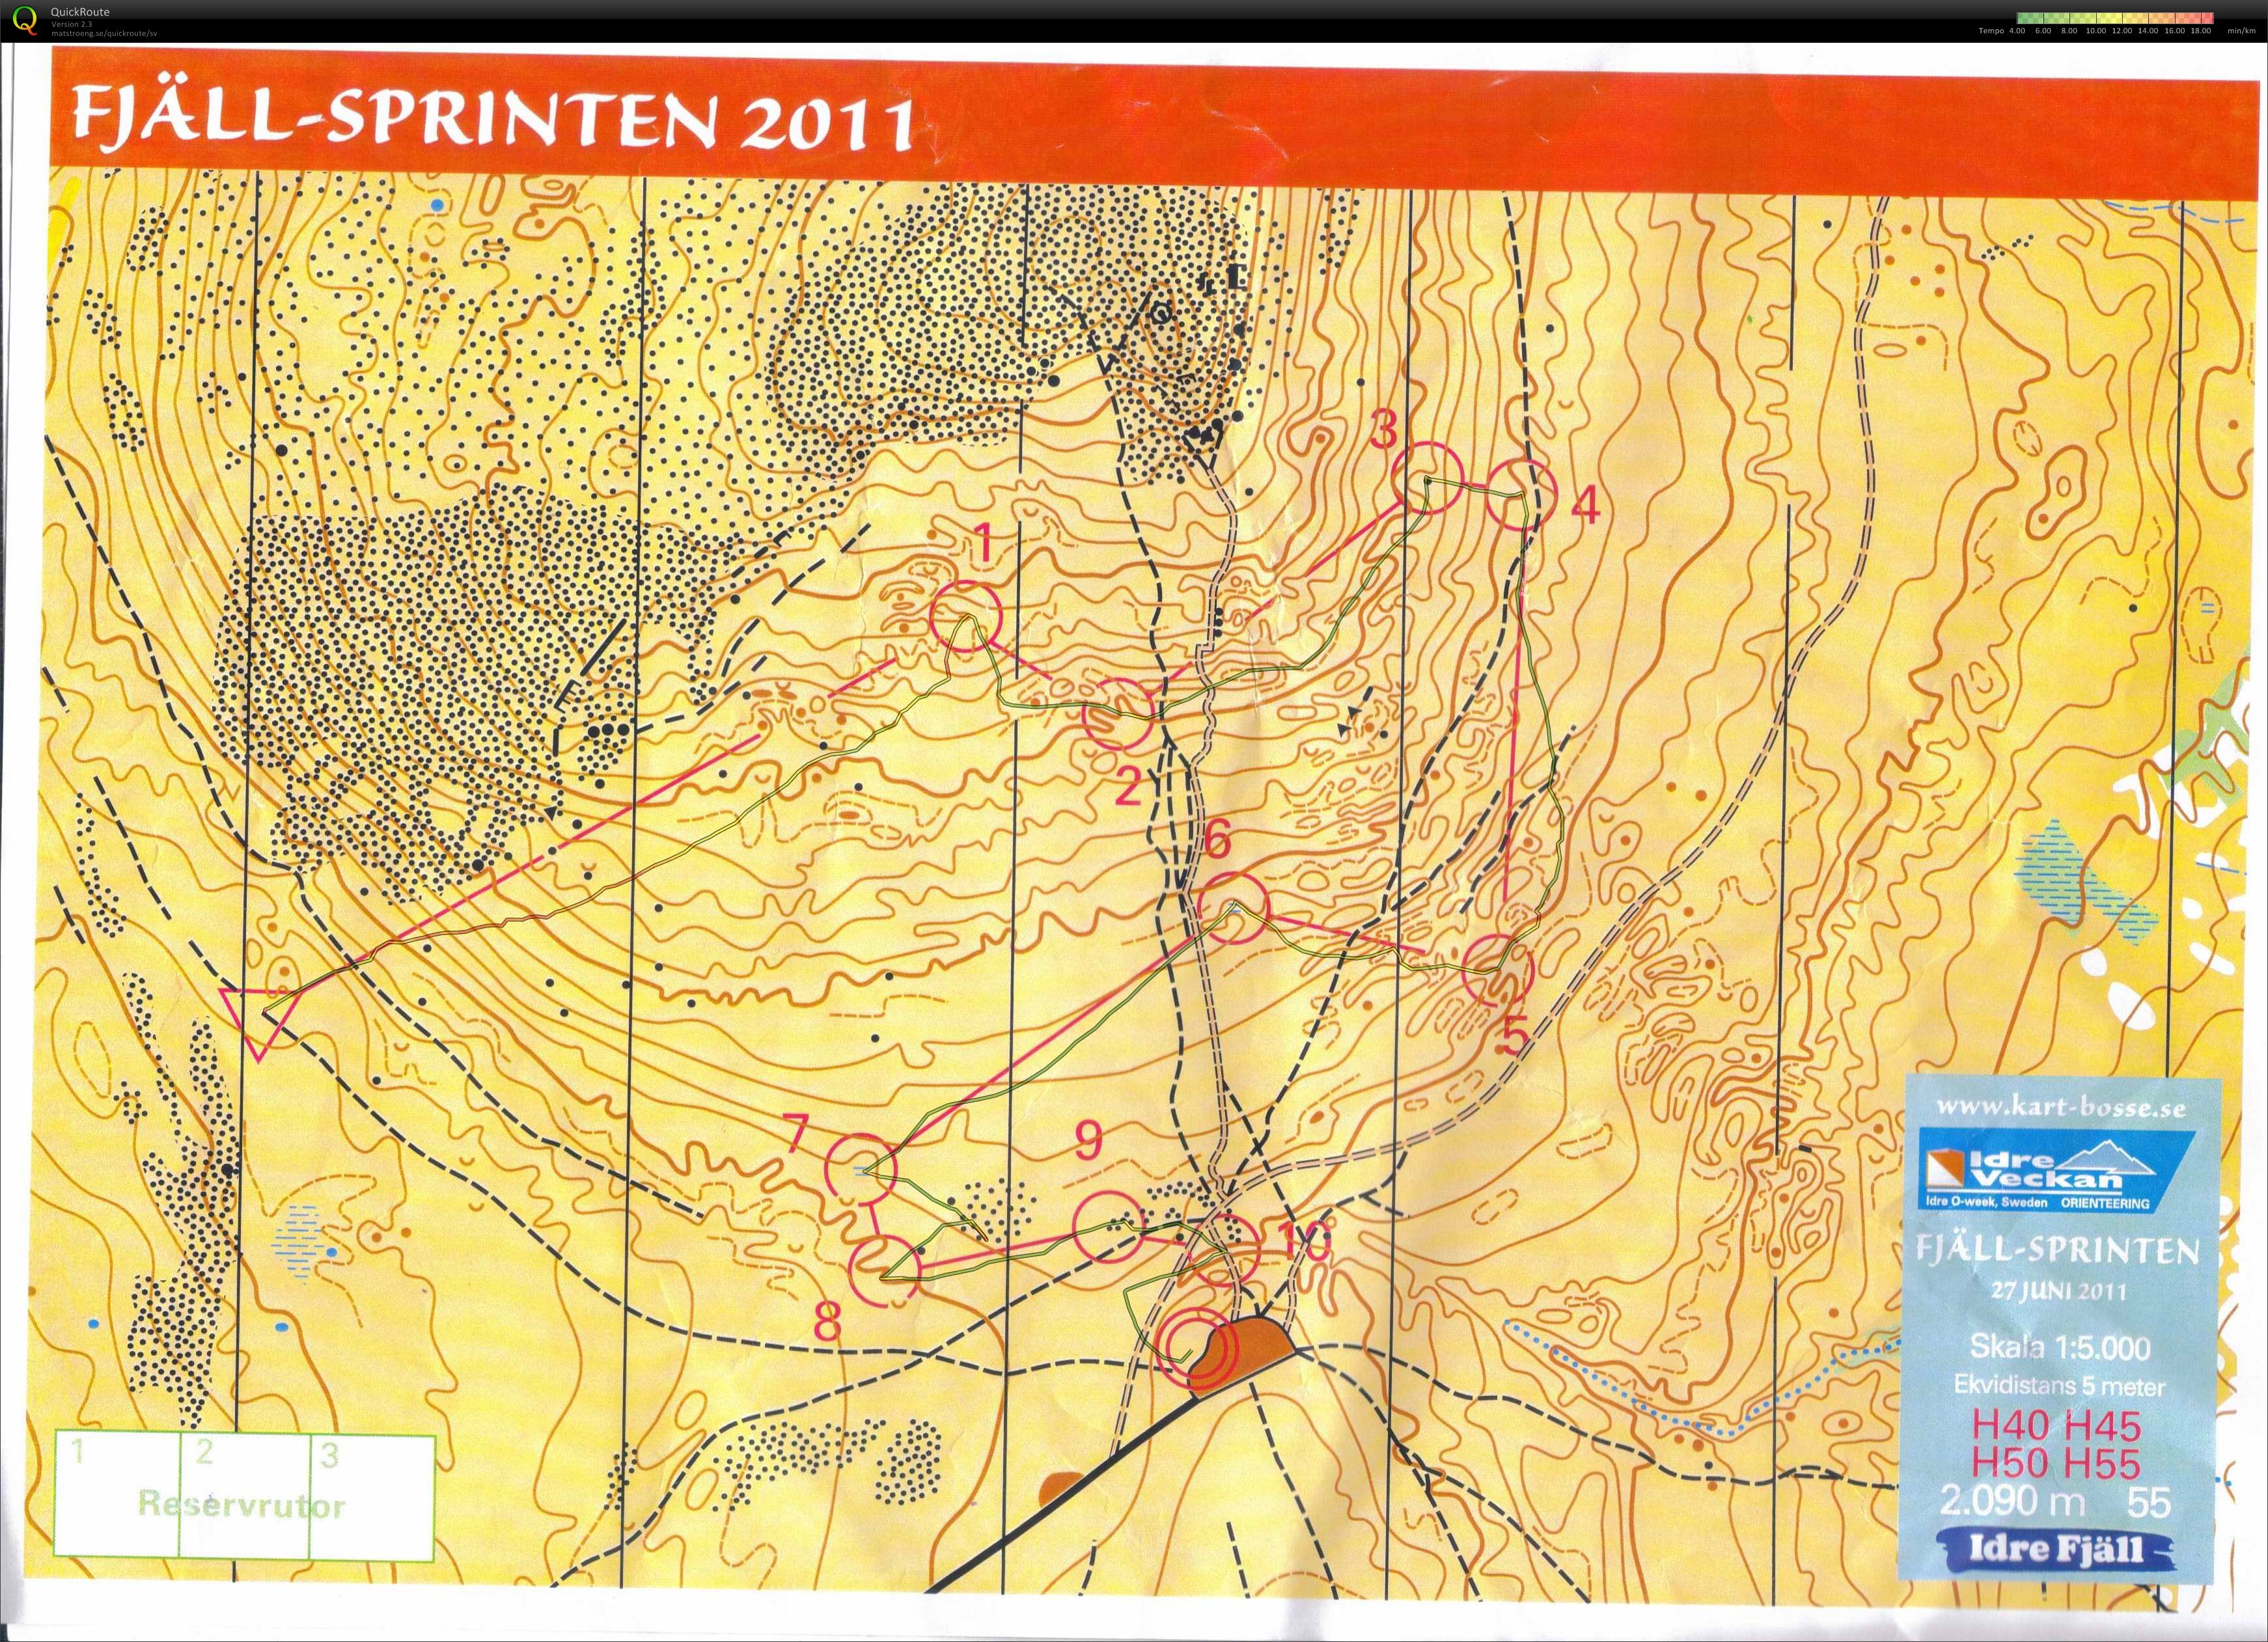 Idre fjällsprint (27.06.2011)